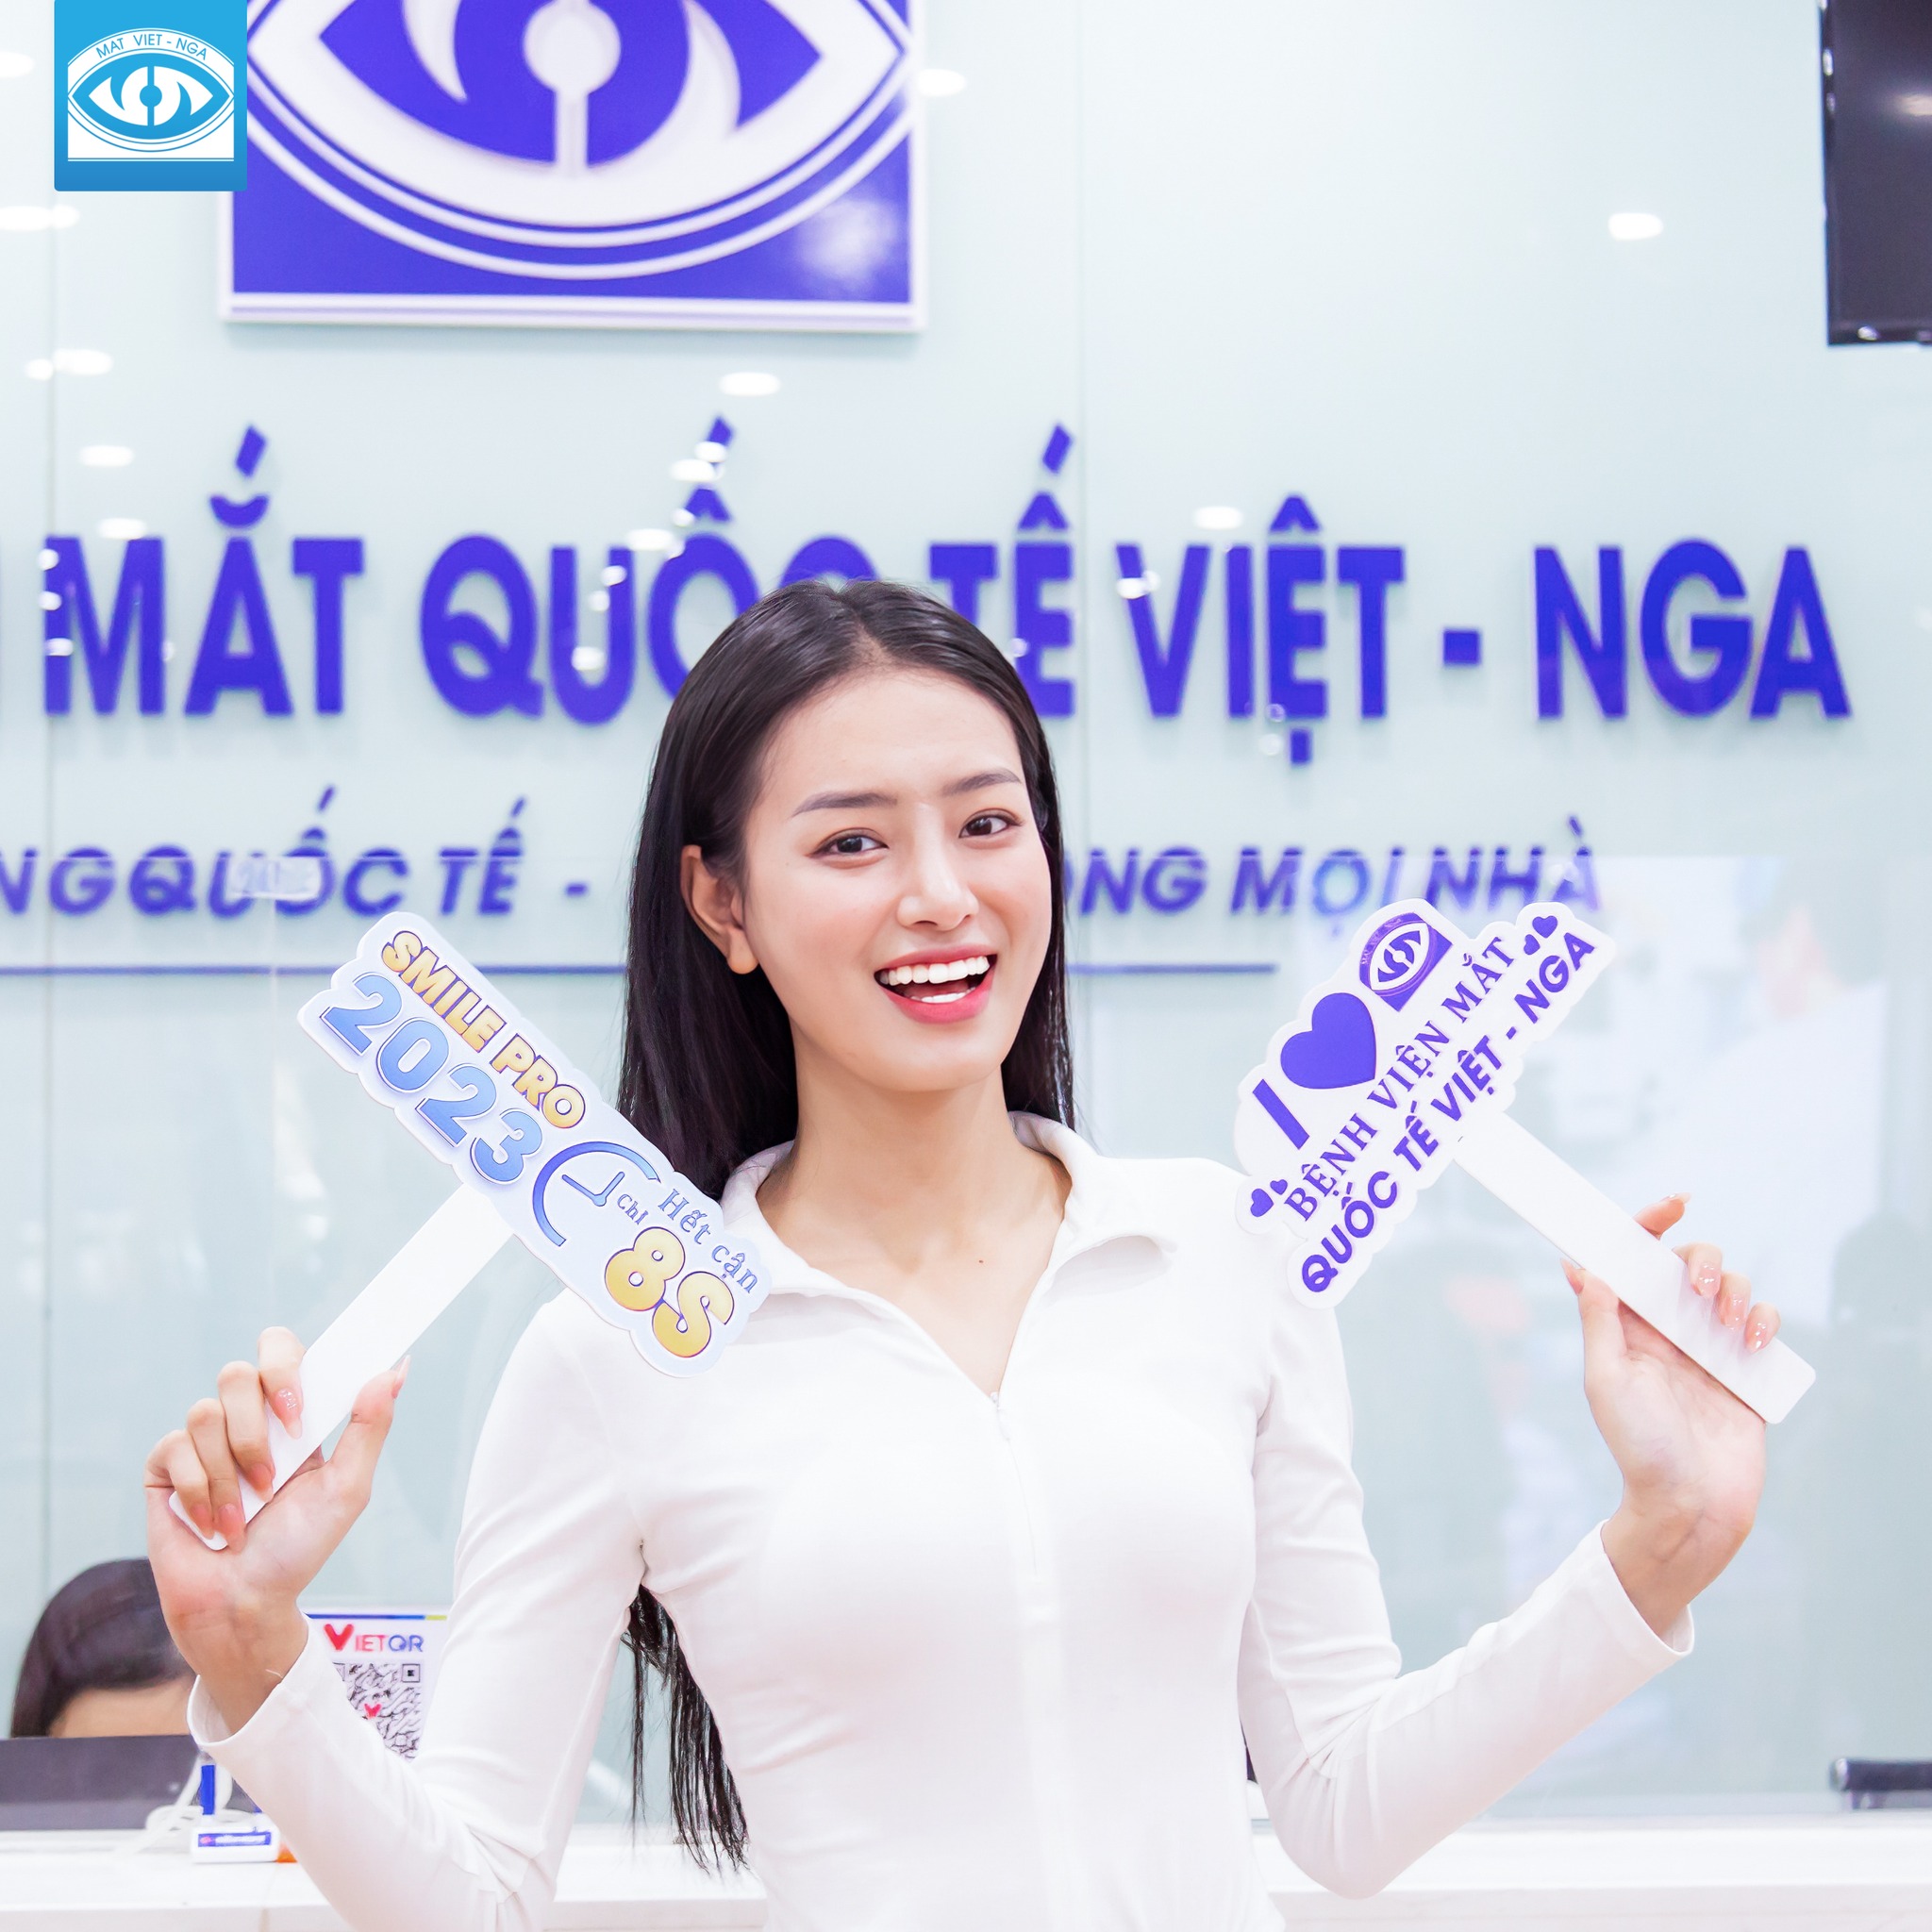 Bệnh Viện Mắt Quốc Tế Việt - Nga TP.HCM ảnh 1